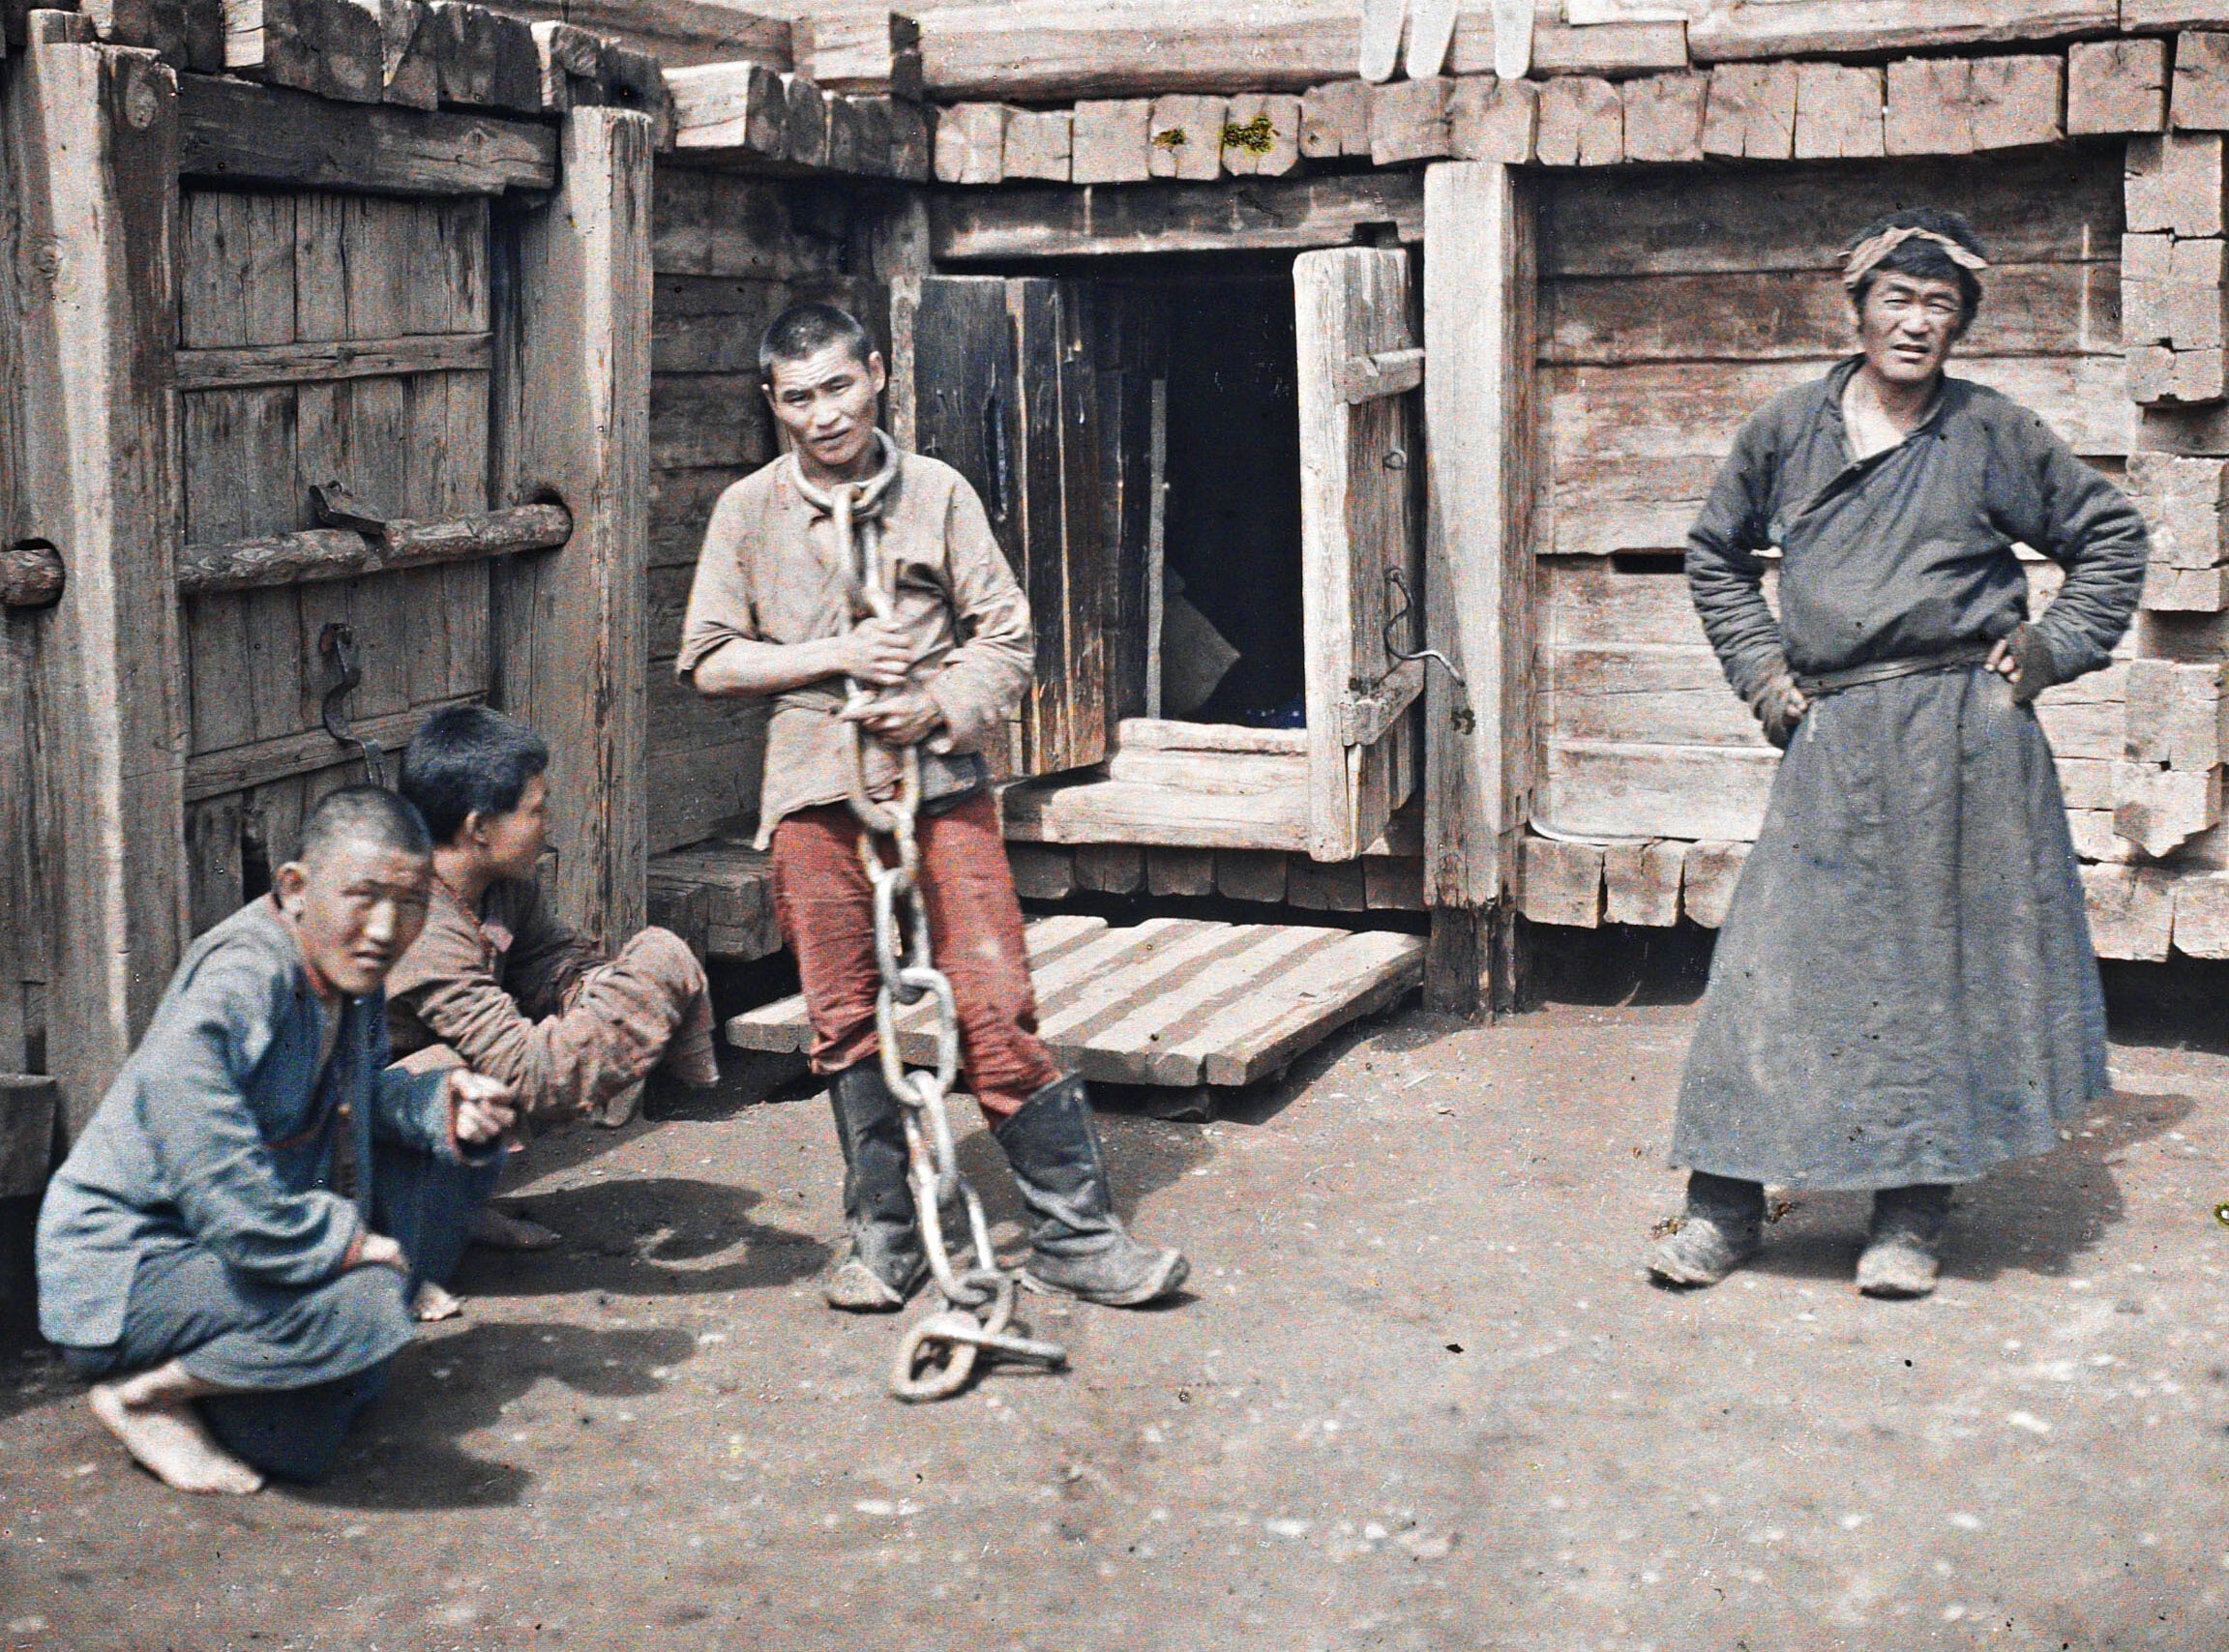 Урга, Монголия. Охранник и заключенные в тюрьме, 1913 год, автор Стефан Пассе (автохром)